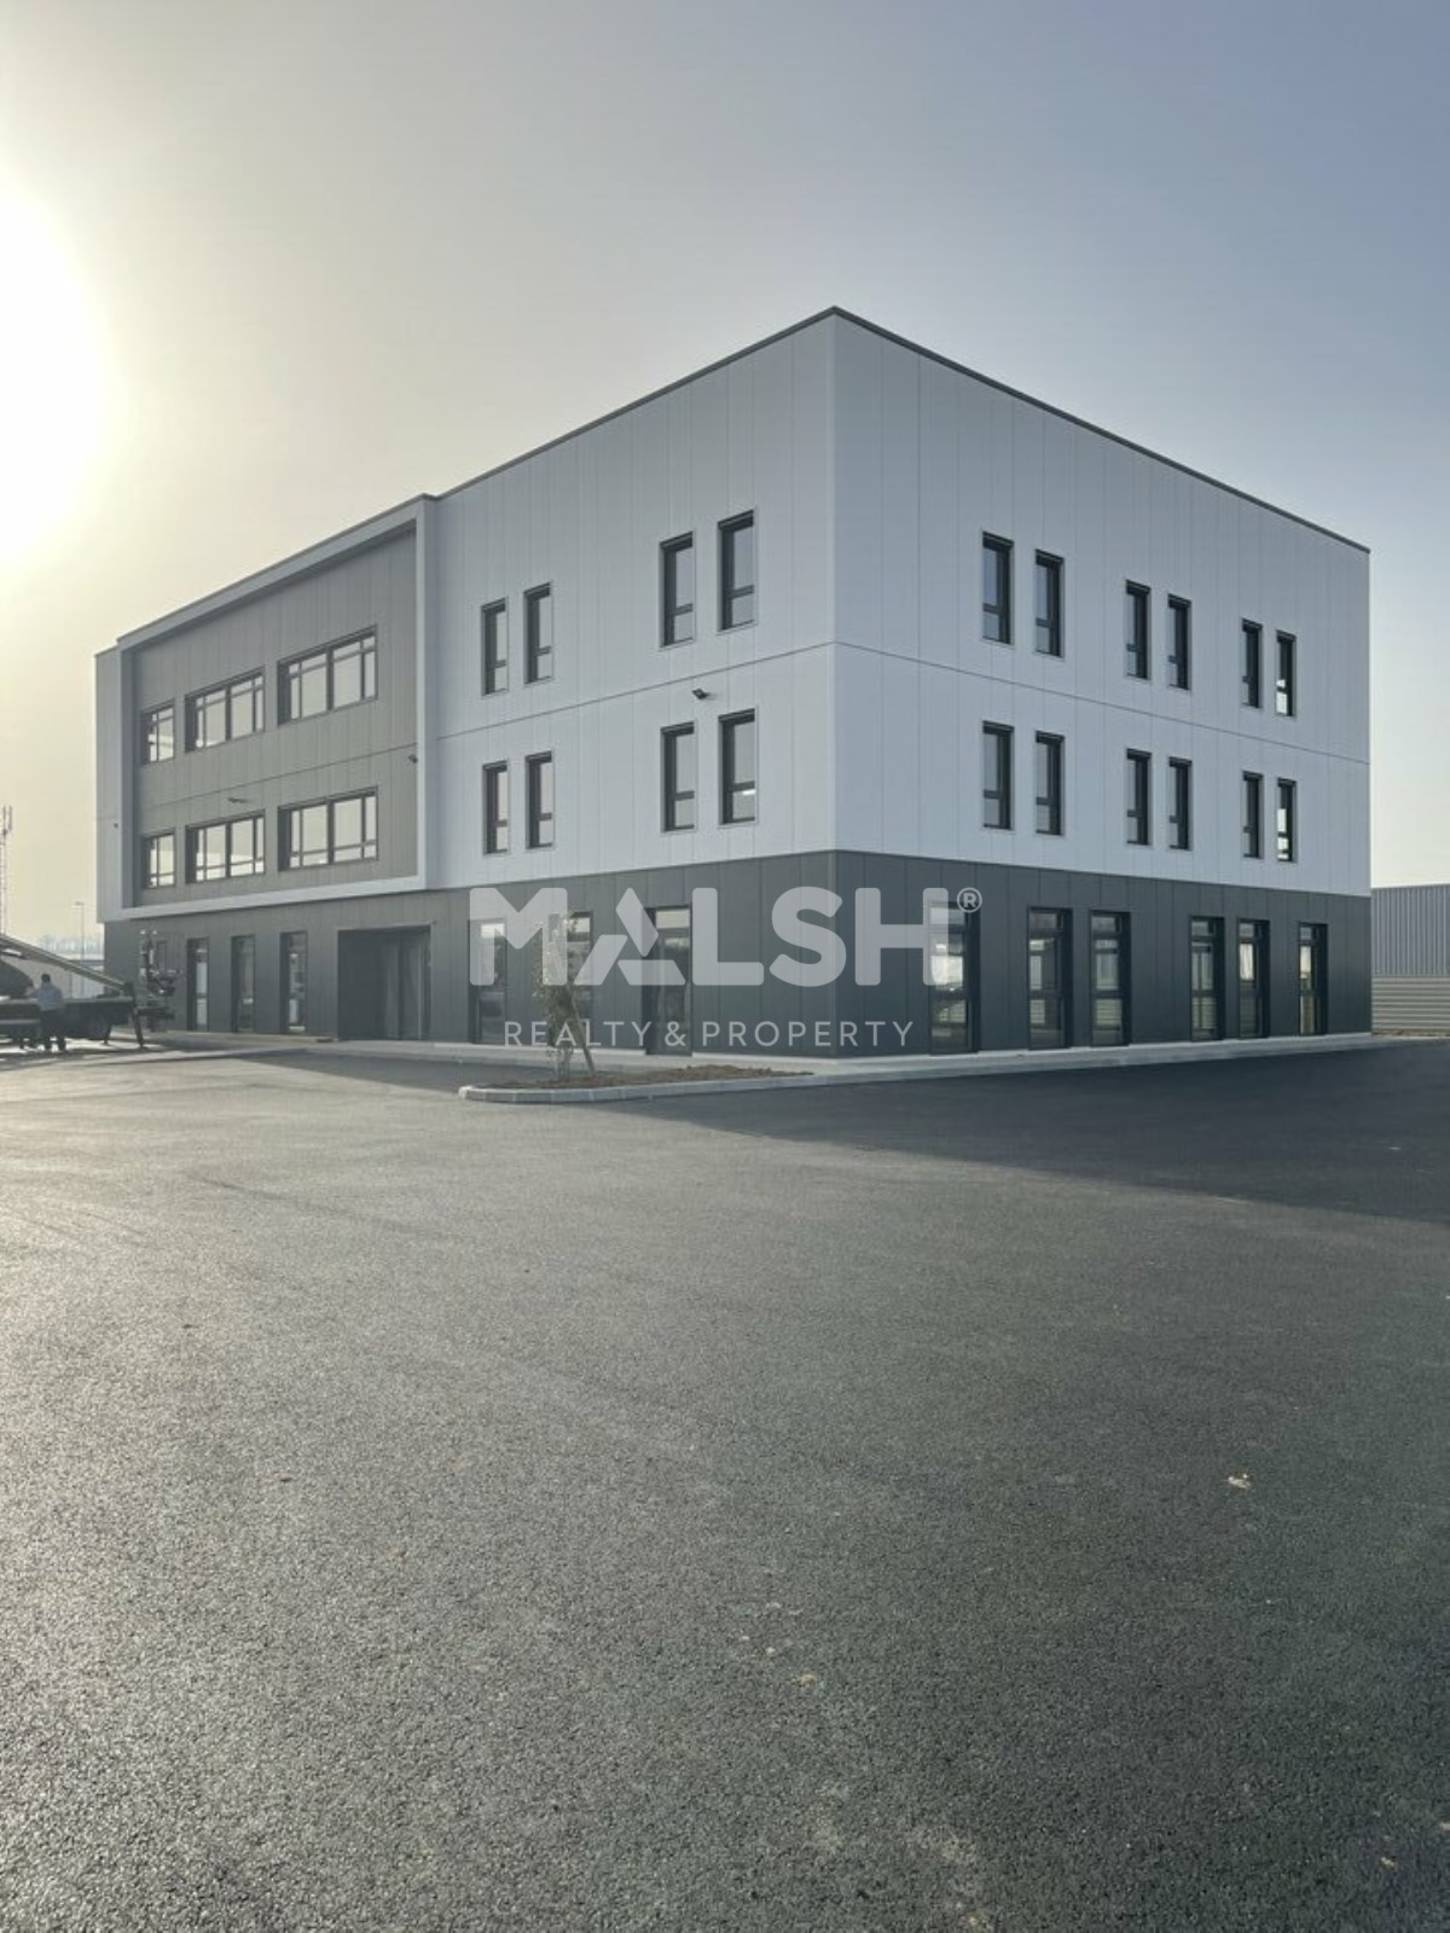 MALSH Realty & Property - Commerce - Extérieurs NORD (Villefranche / Belleville) - Villefranche-sur-Saône - MD_